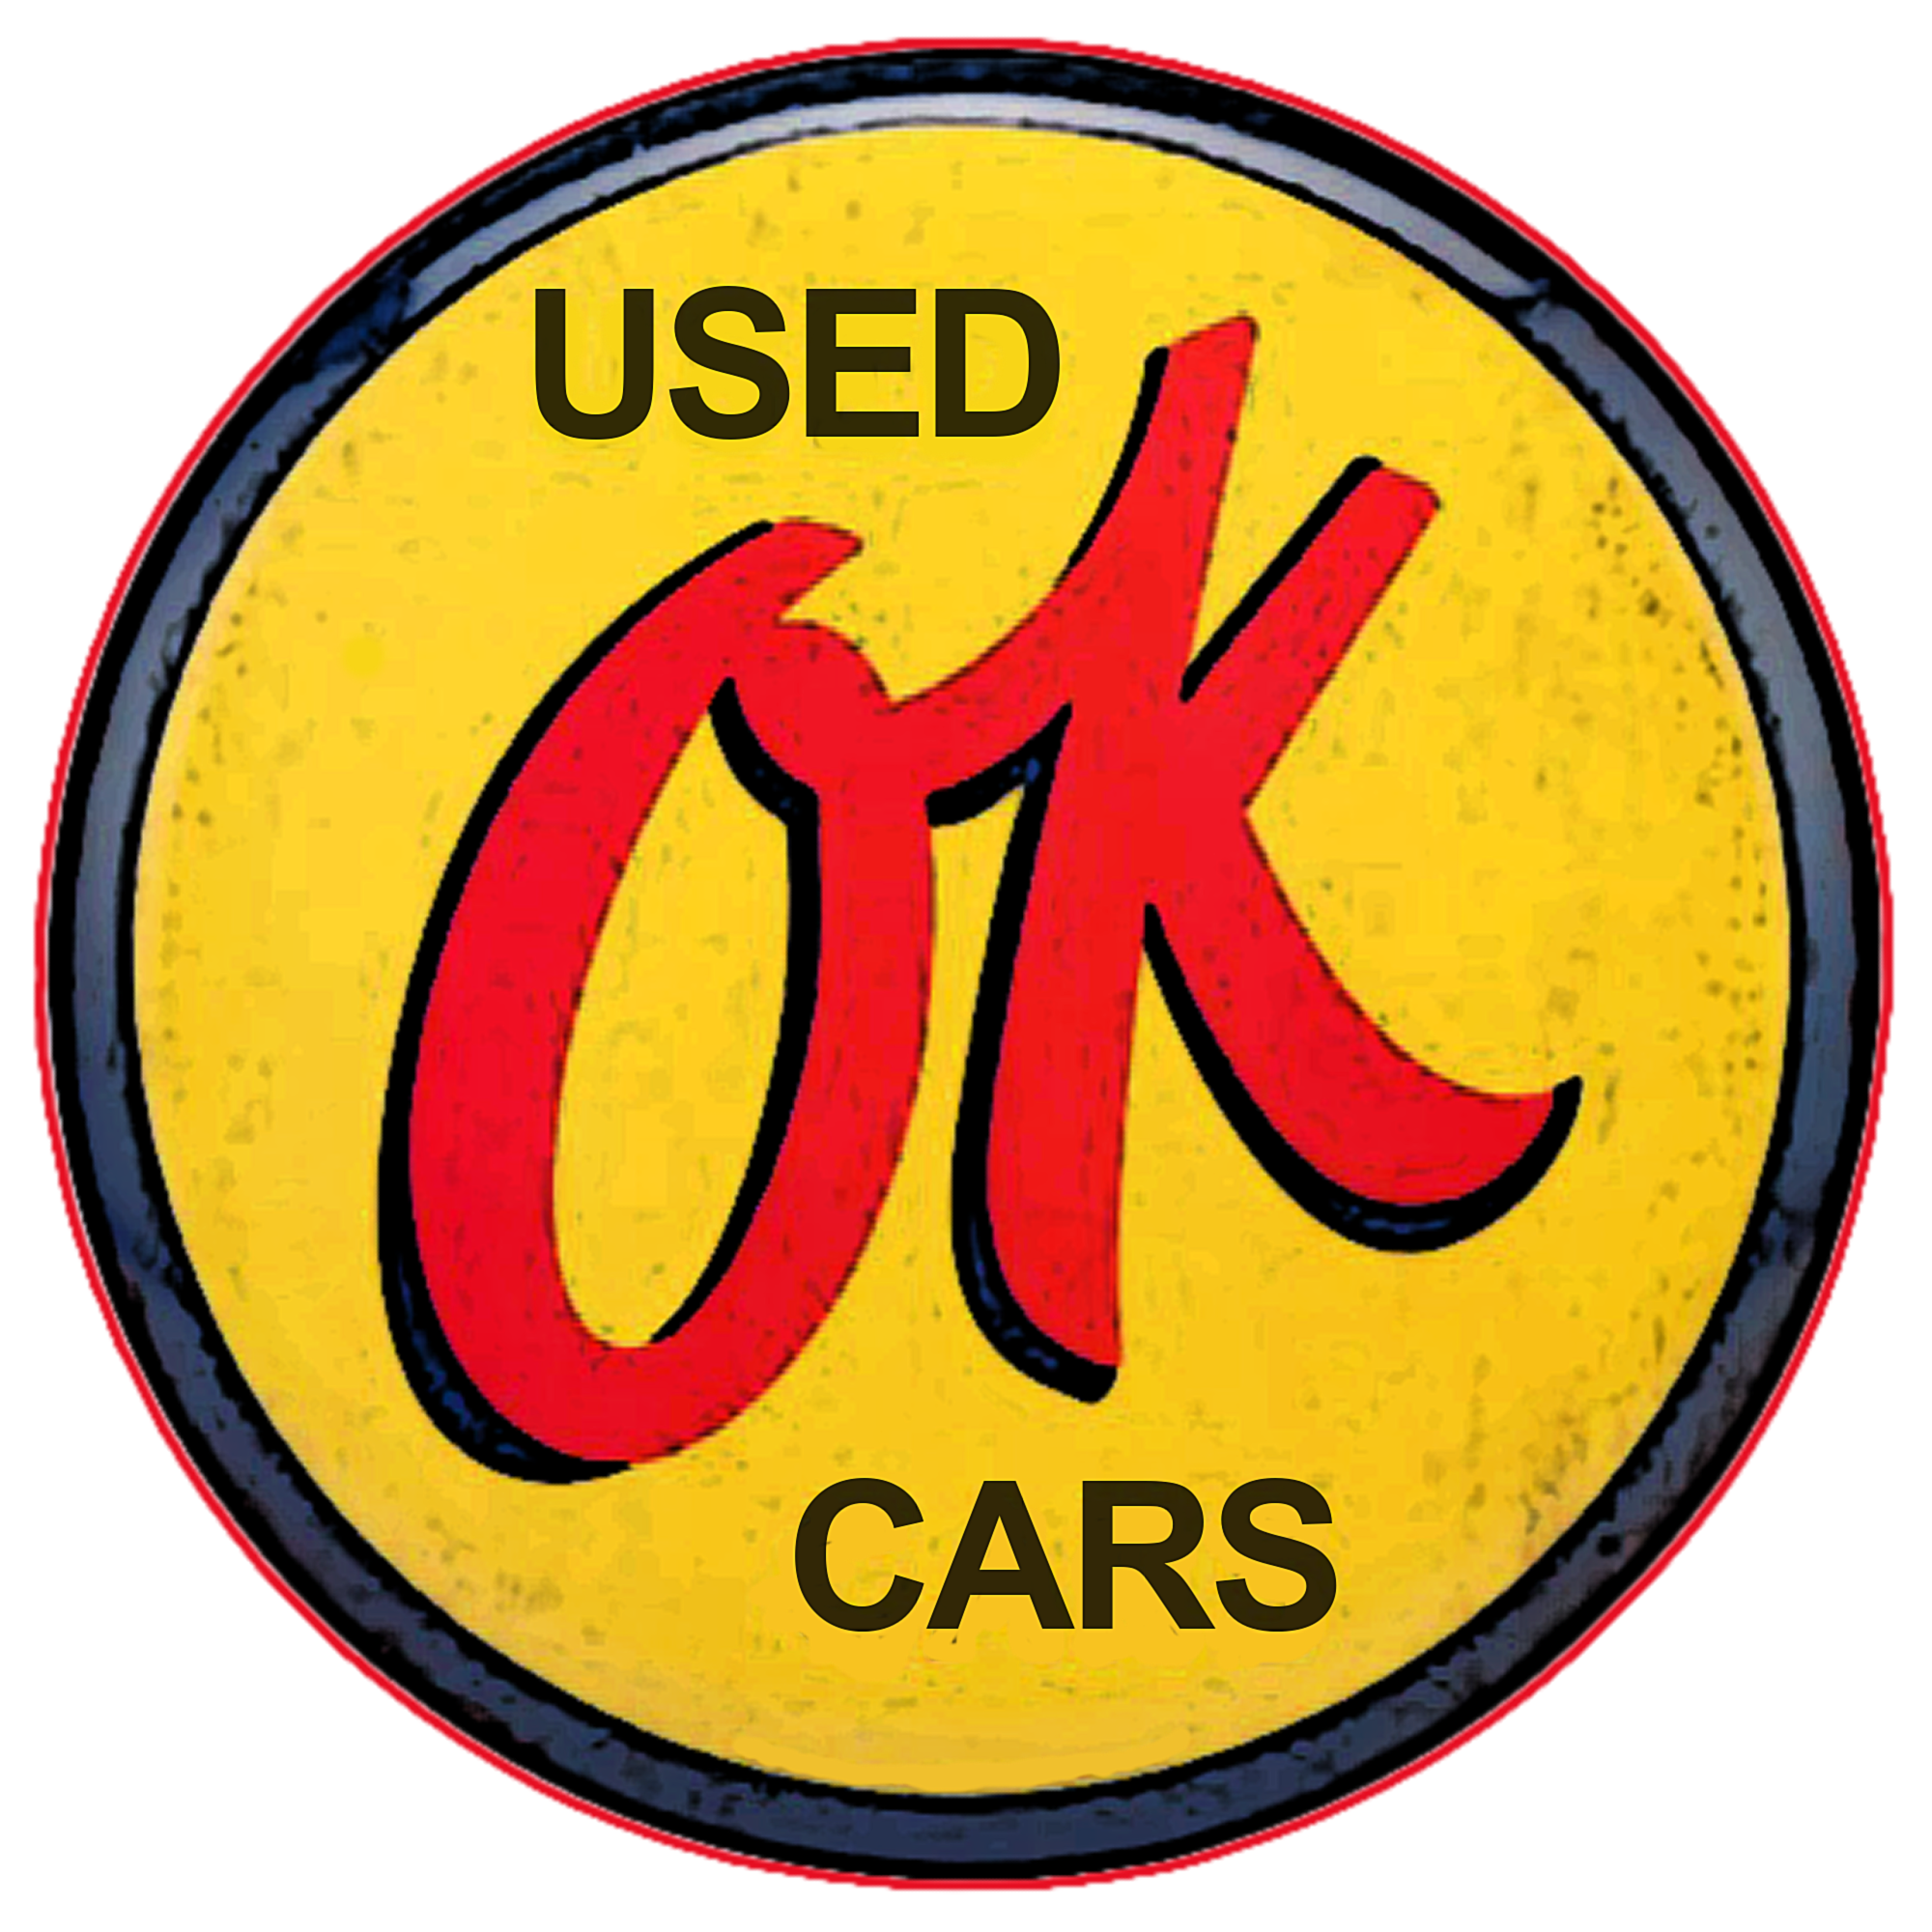 OK Used Cars Vintage Sign - Image